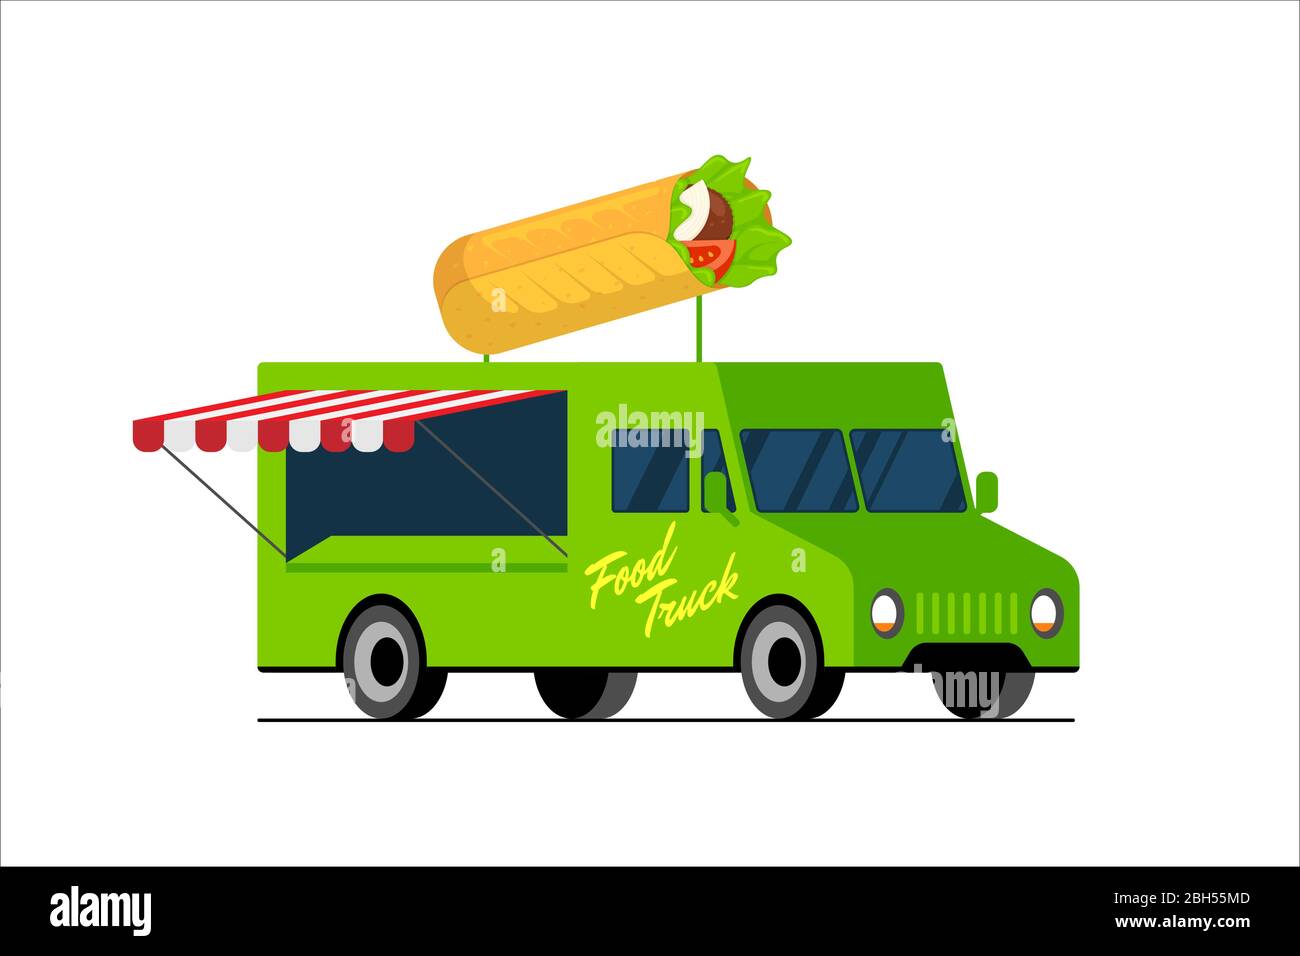 Fast Food grünen LKW. Döner auf dem Van Dach. Shawarma Auto Lieferservice oder Festival auf Straße Räder Vektor flach isoliert eps Illustration Stock Vektor